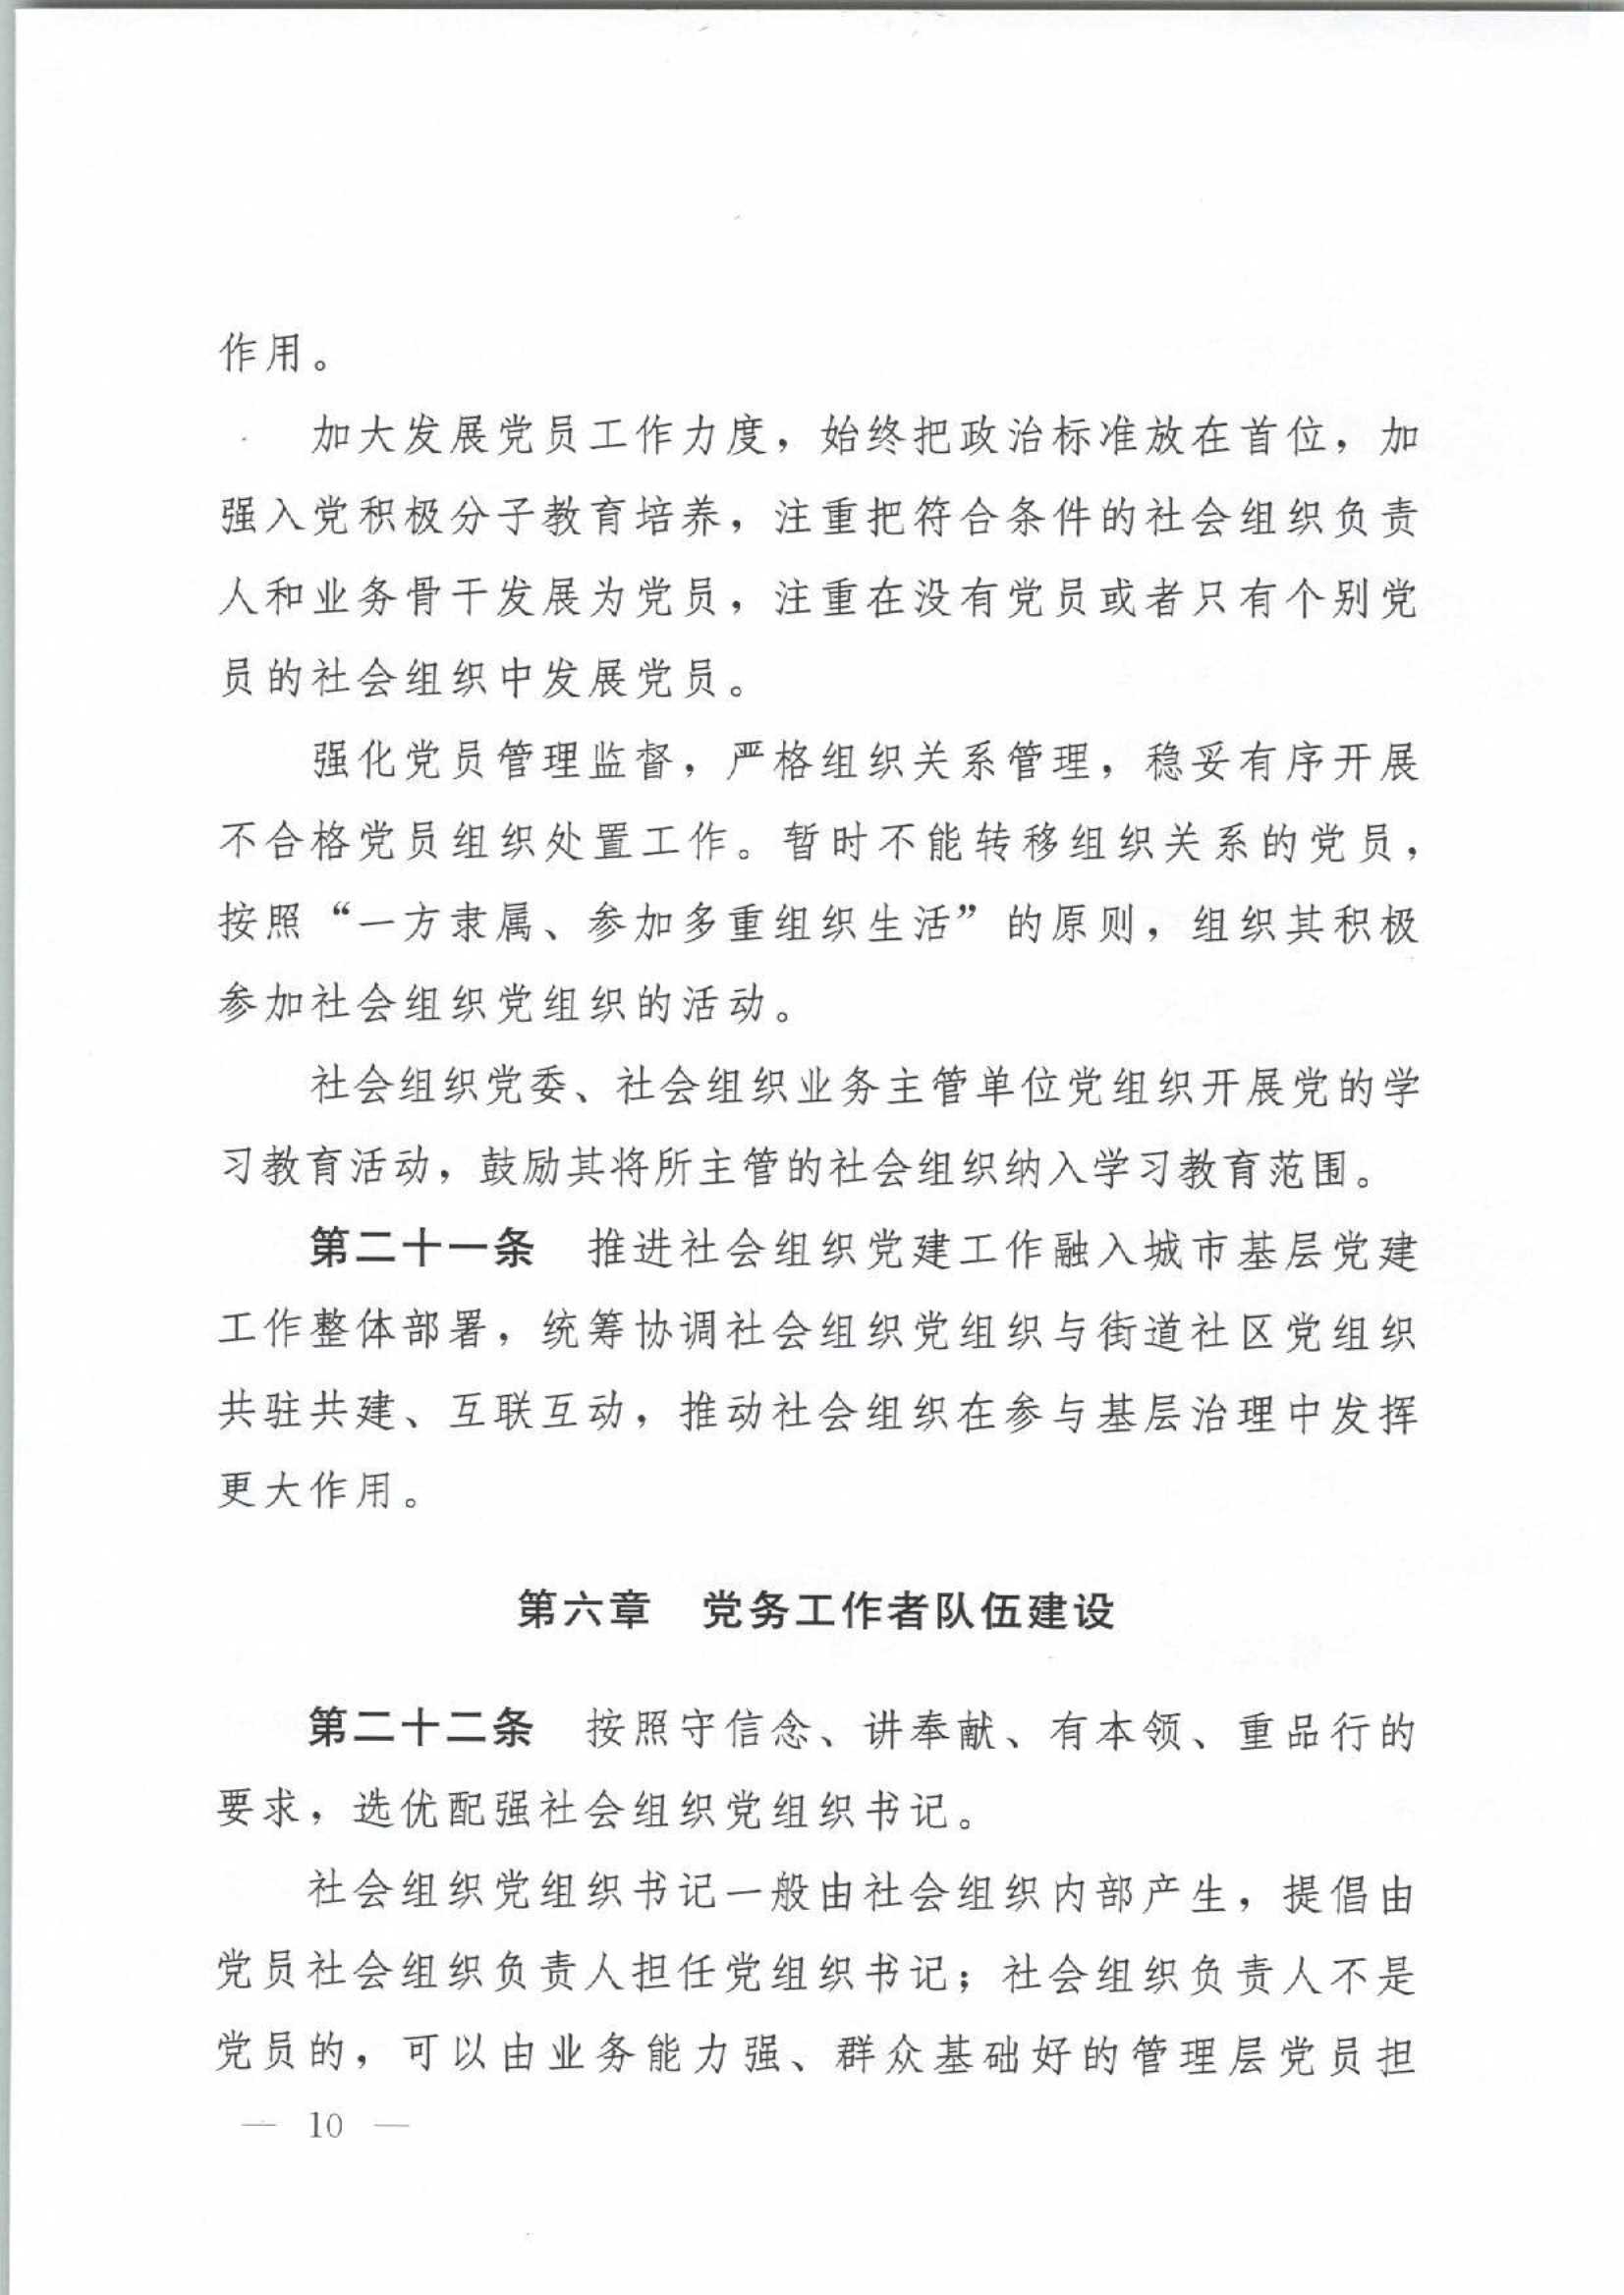 4.深圳市社会组织党的建设工作规定_10.Jpeg